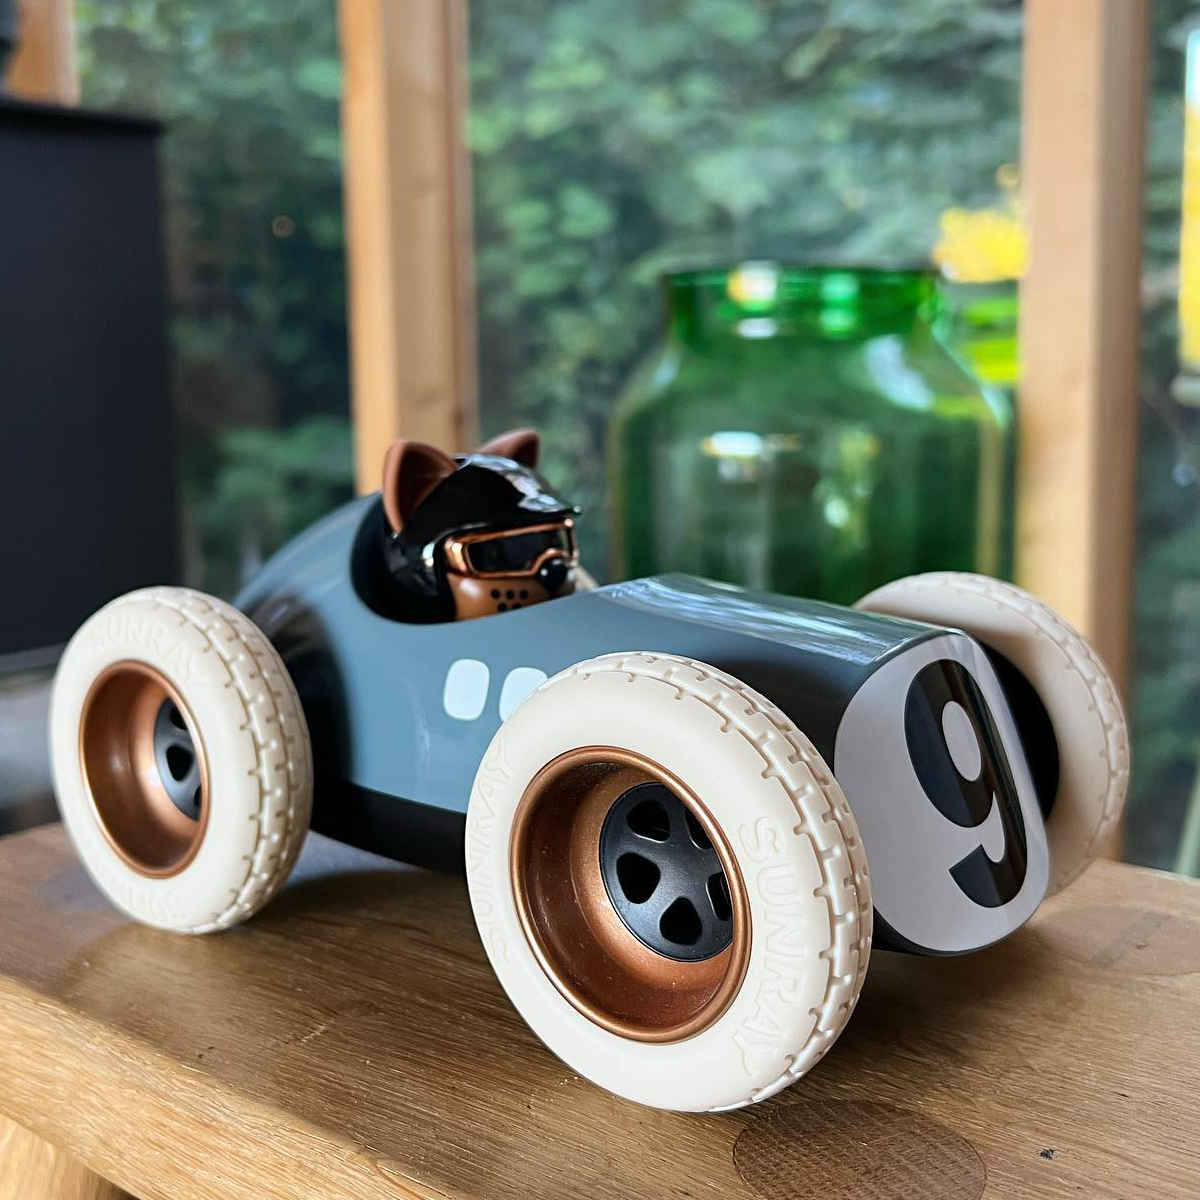 Playforever Mini Speedy Car - Silver - Tom's Toys